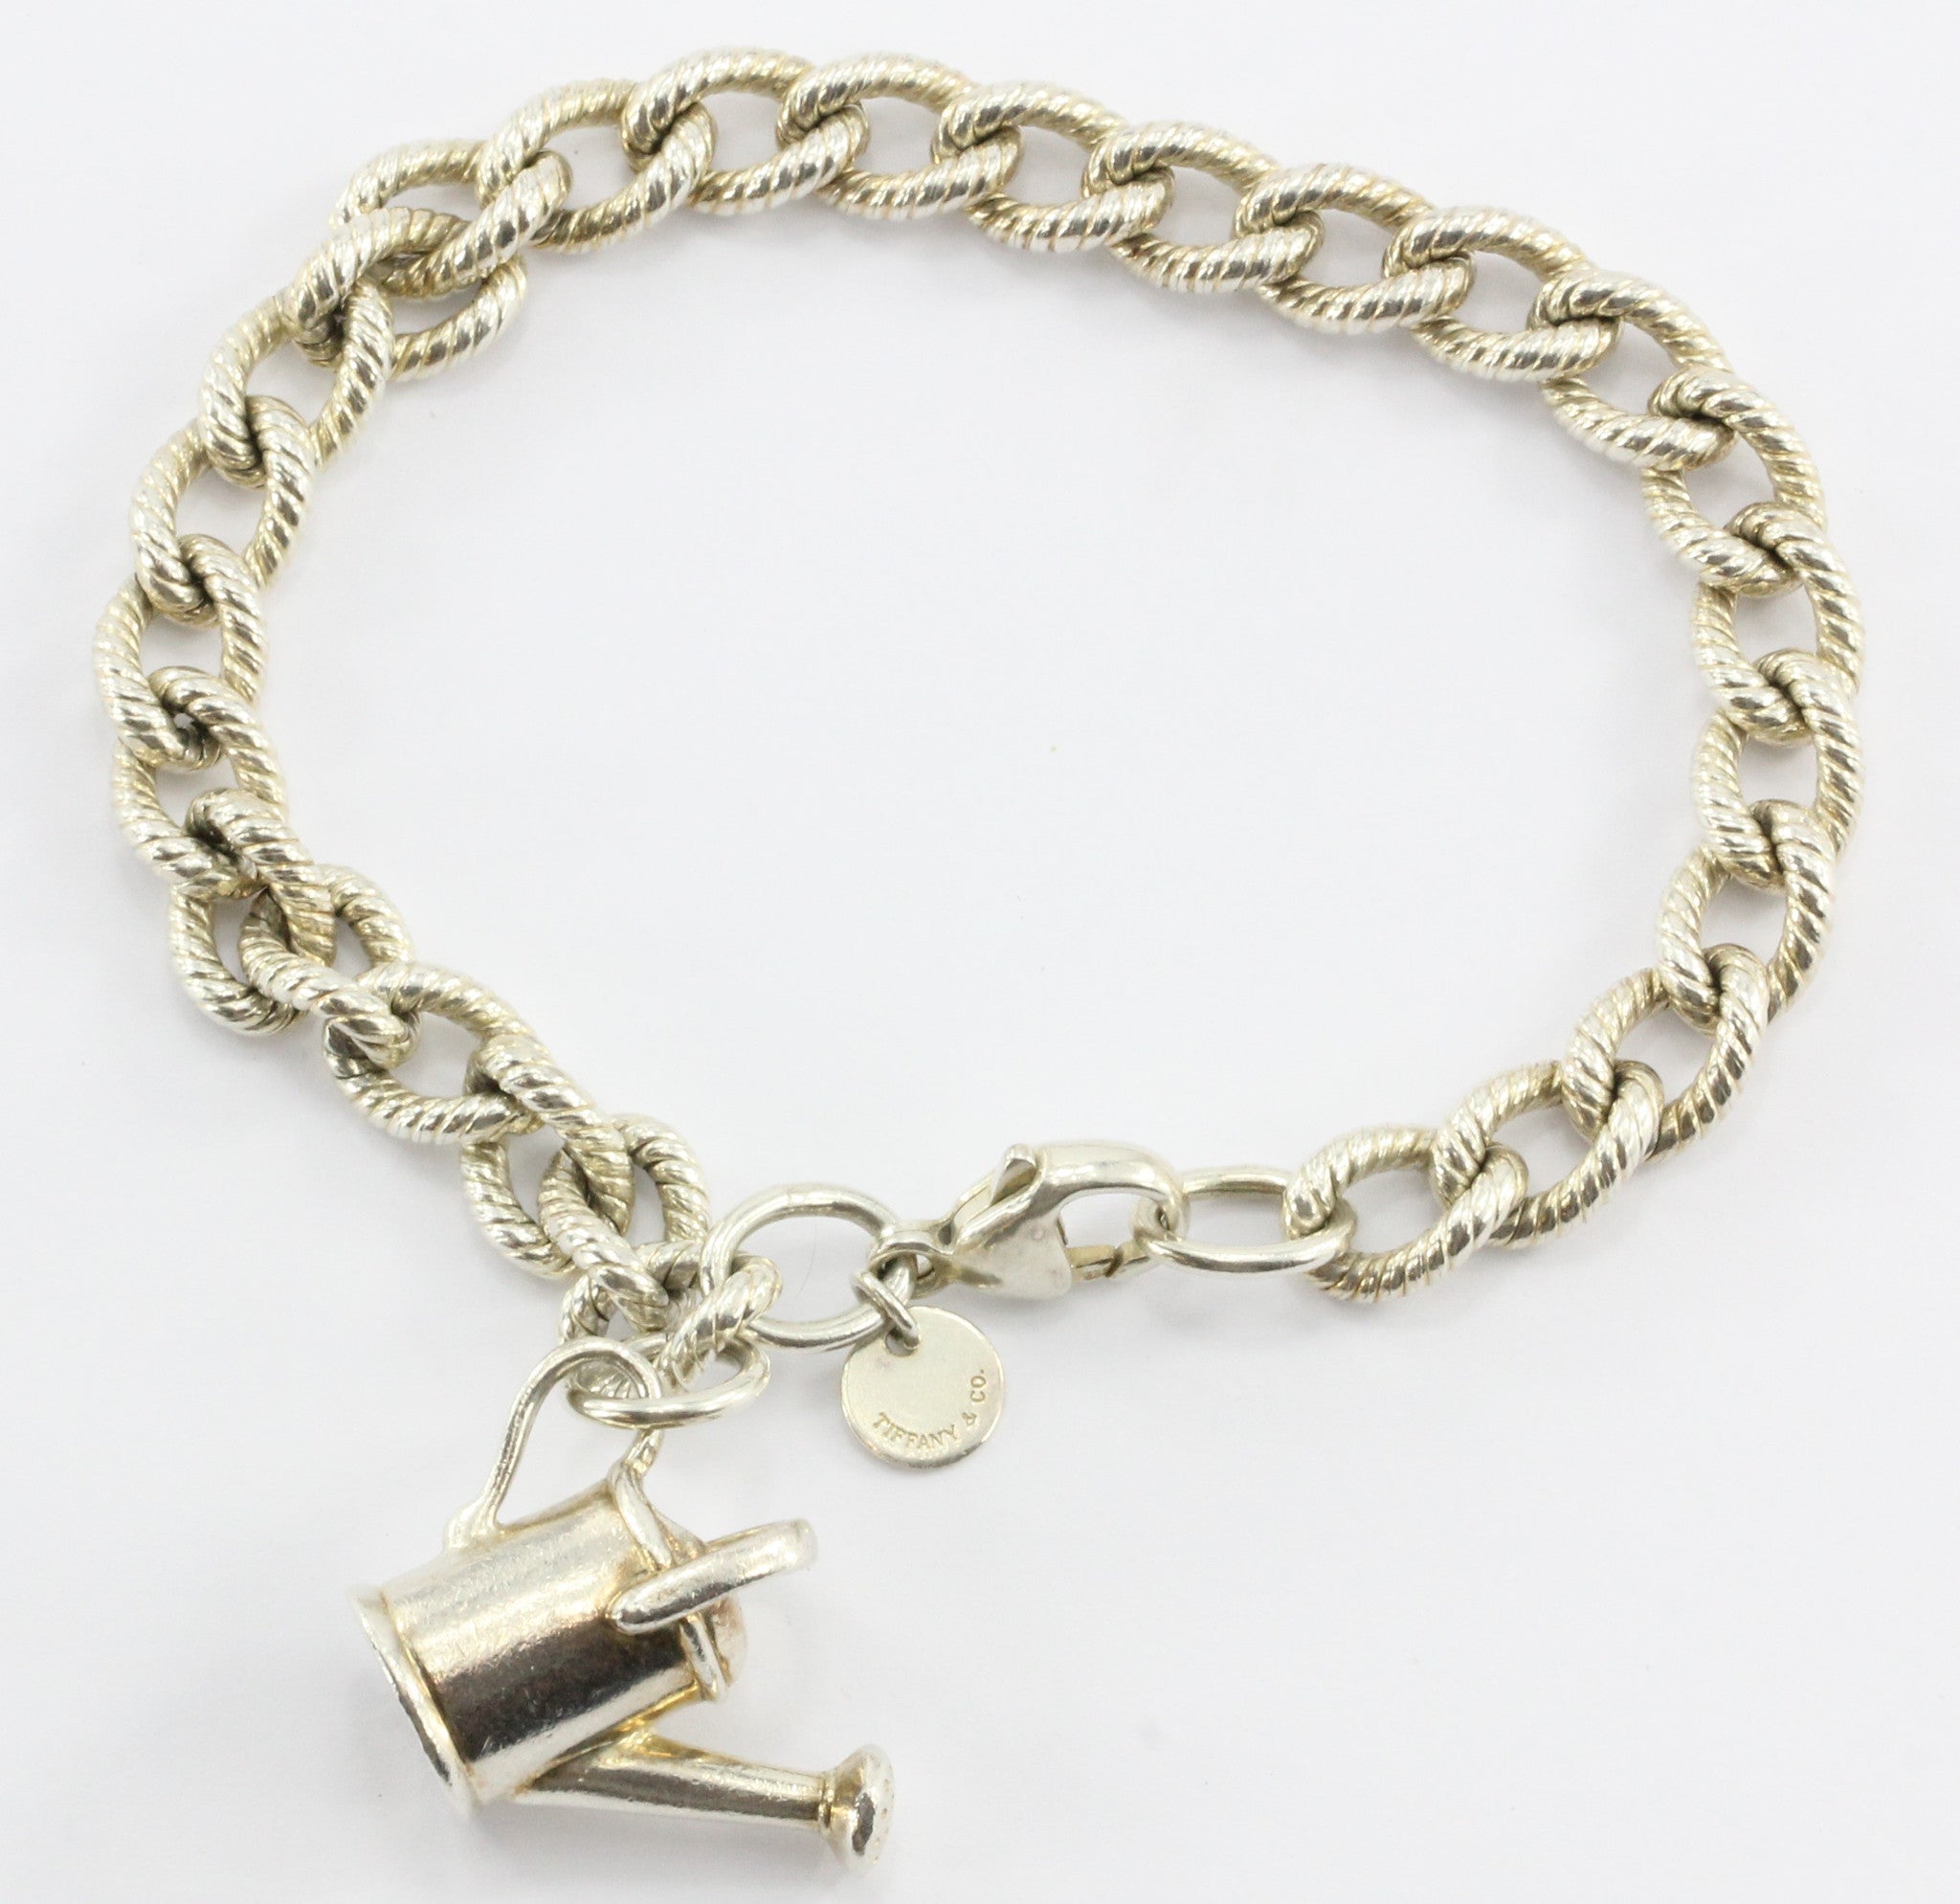 Tiffany & Co. 18k Rose Gold Heart Lock Sterling Silver Charm Bracelet  Tiffany & Co.